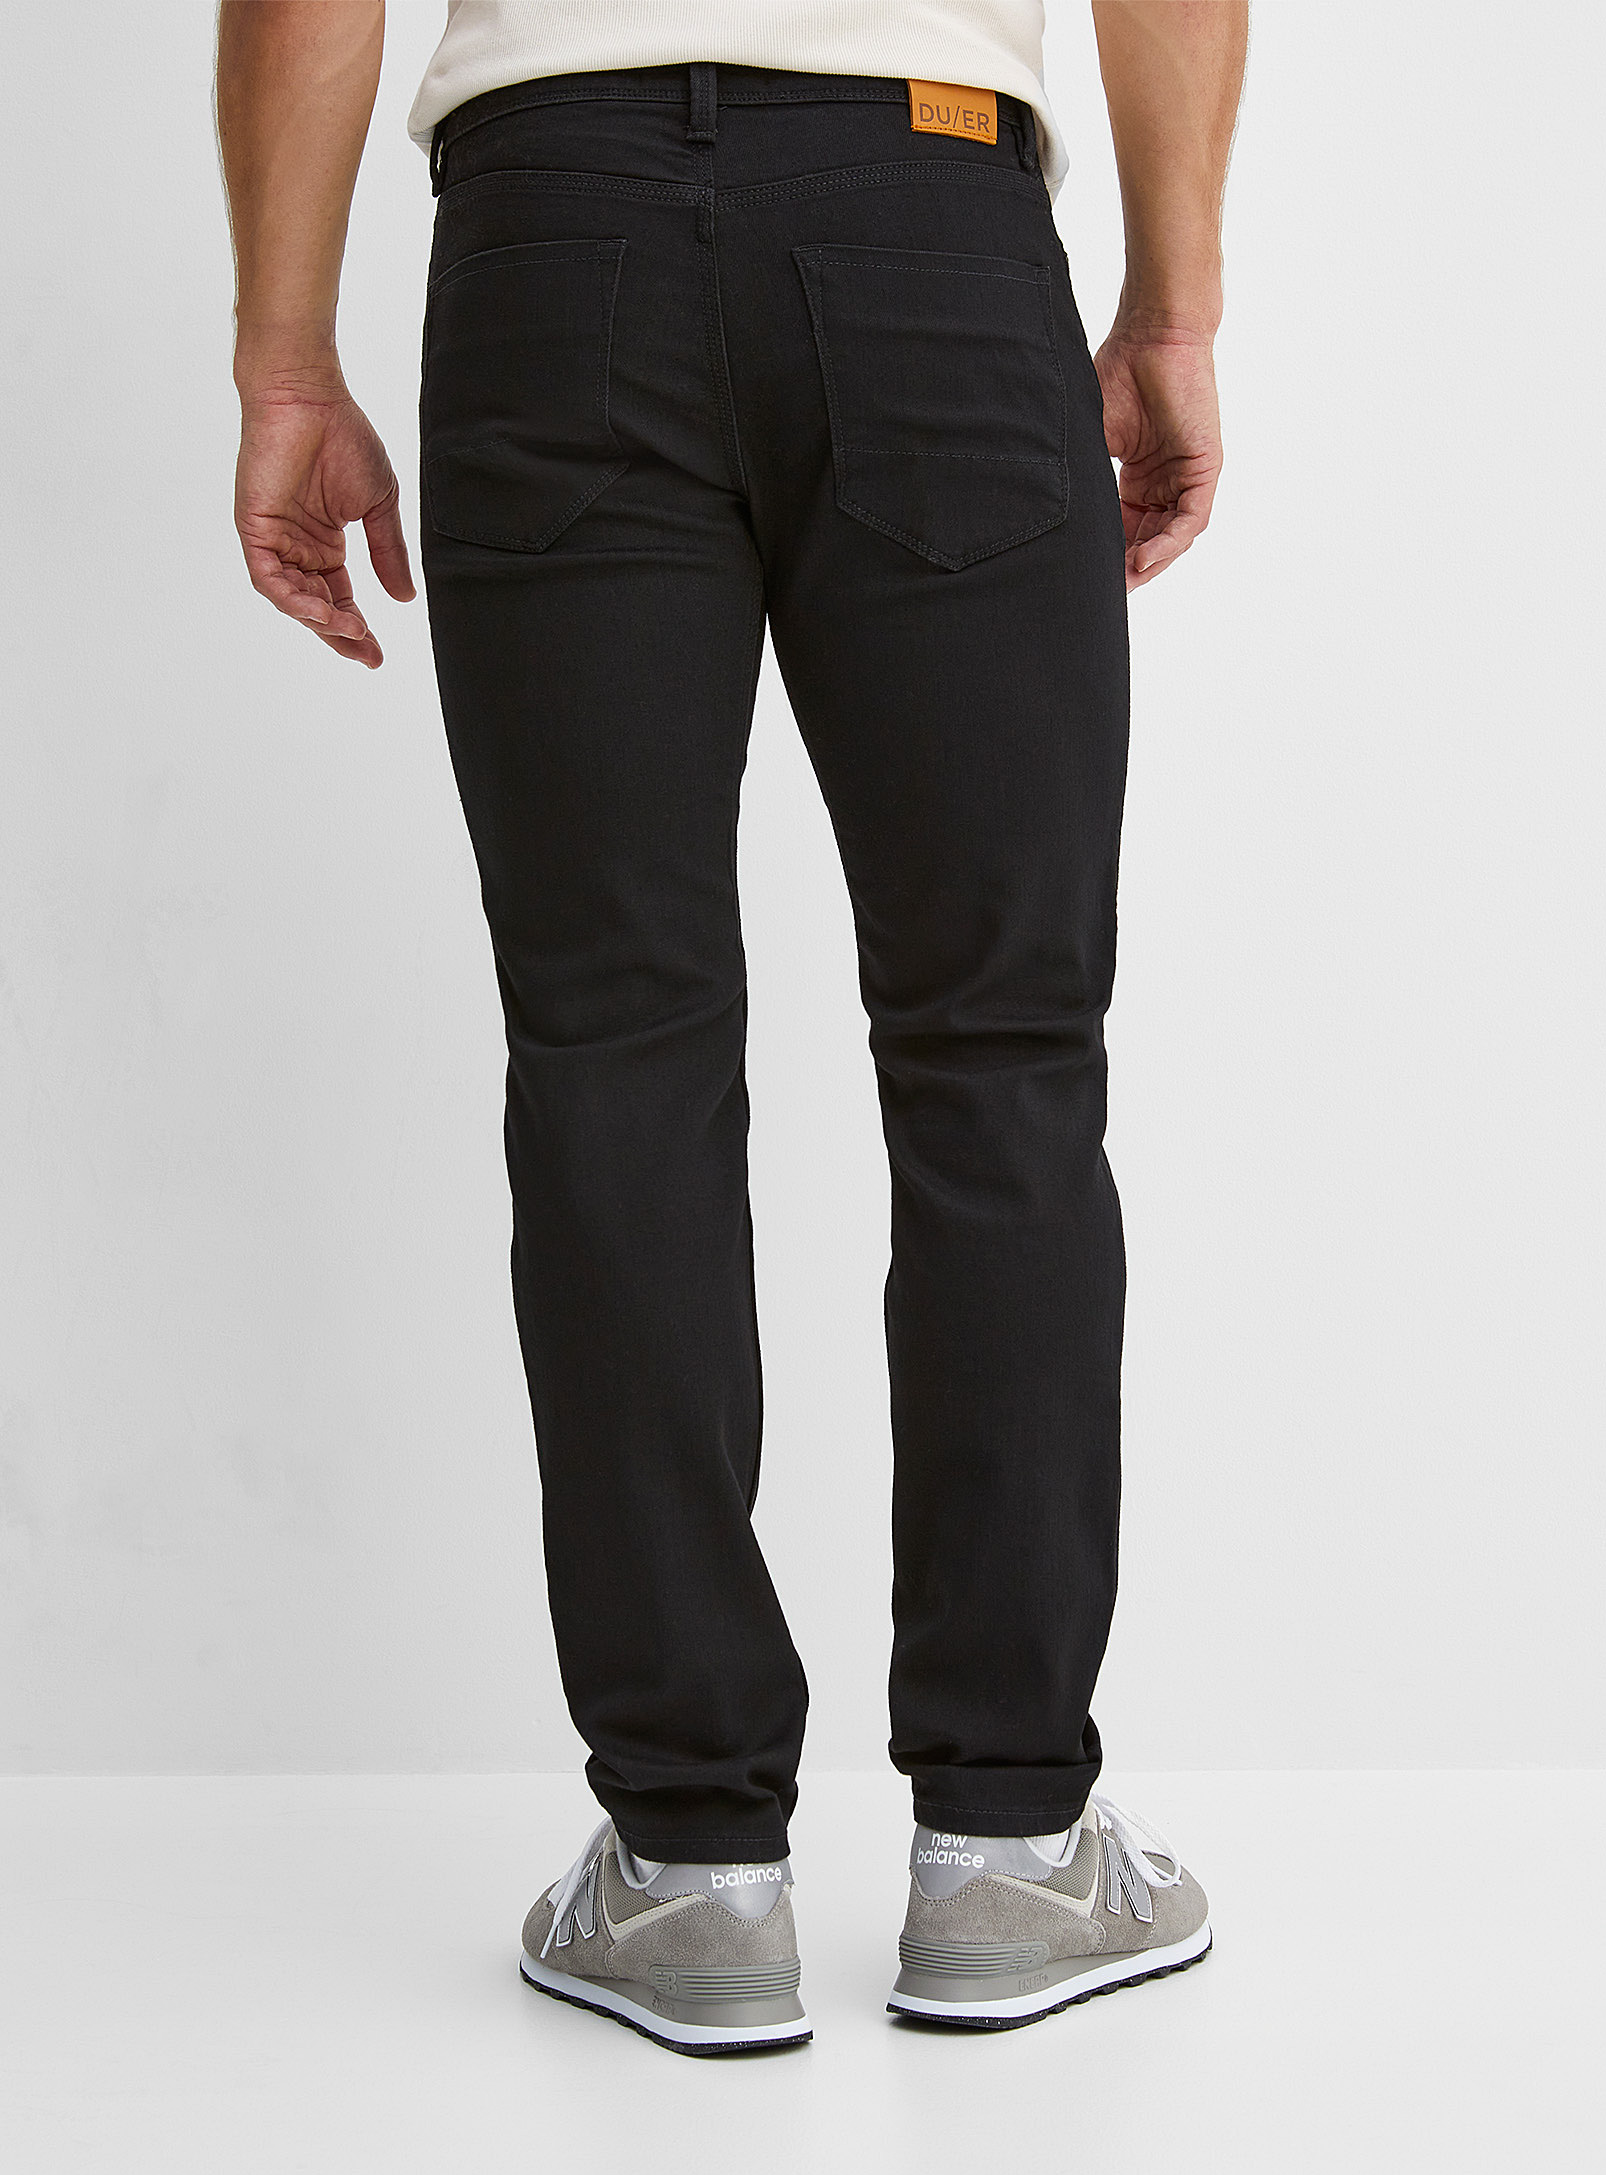 DUER - Le jean extensible noir Performance Coupe étroite